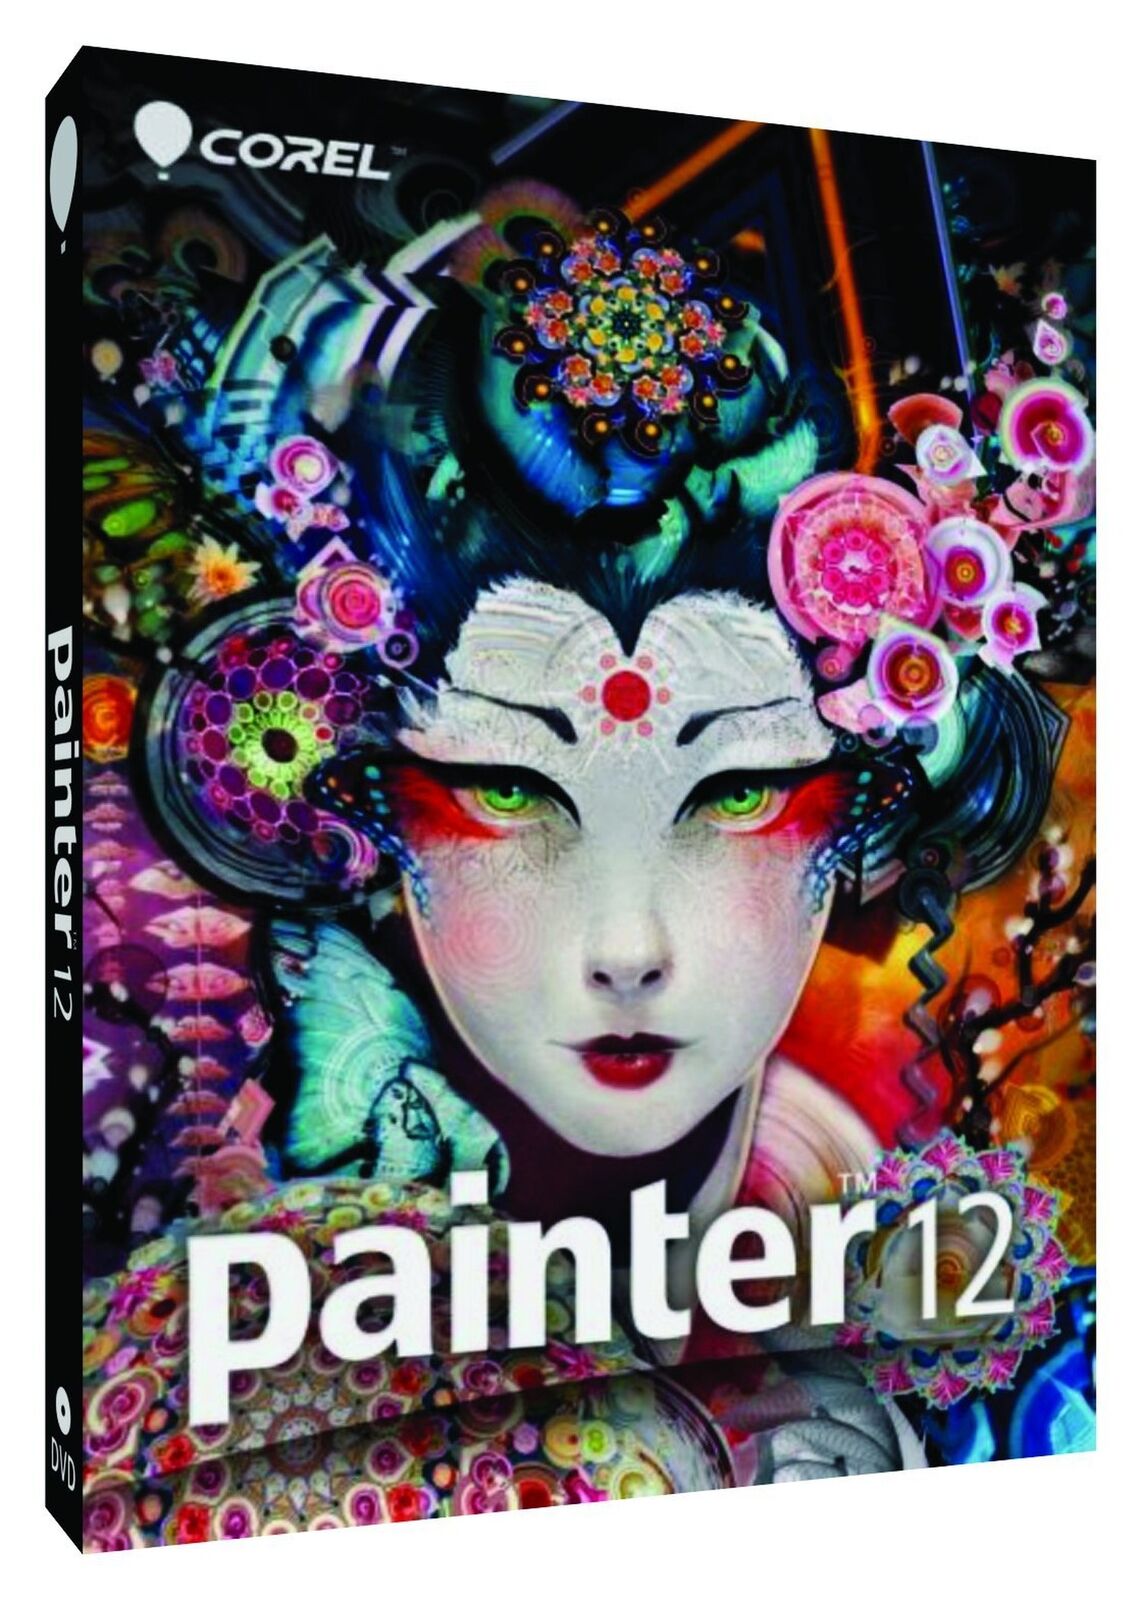 Painter 12 EN PCM